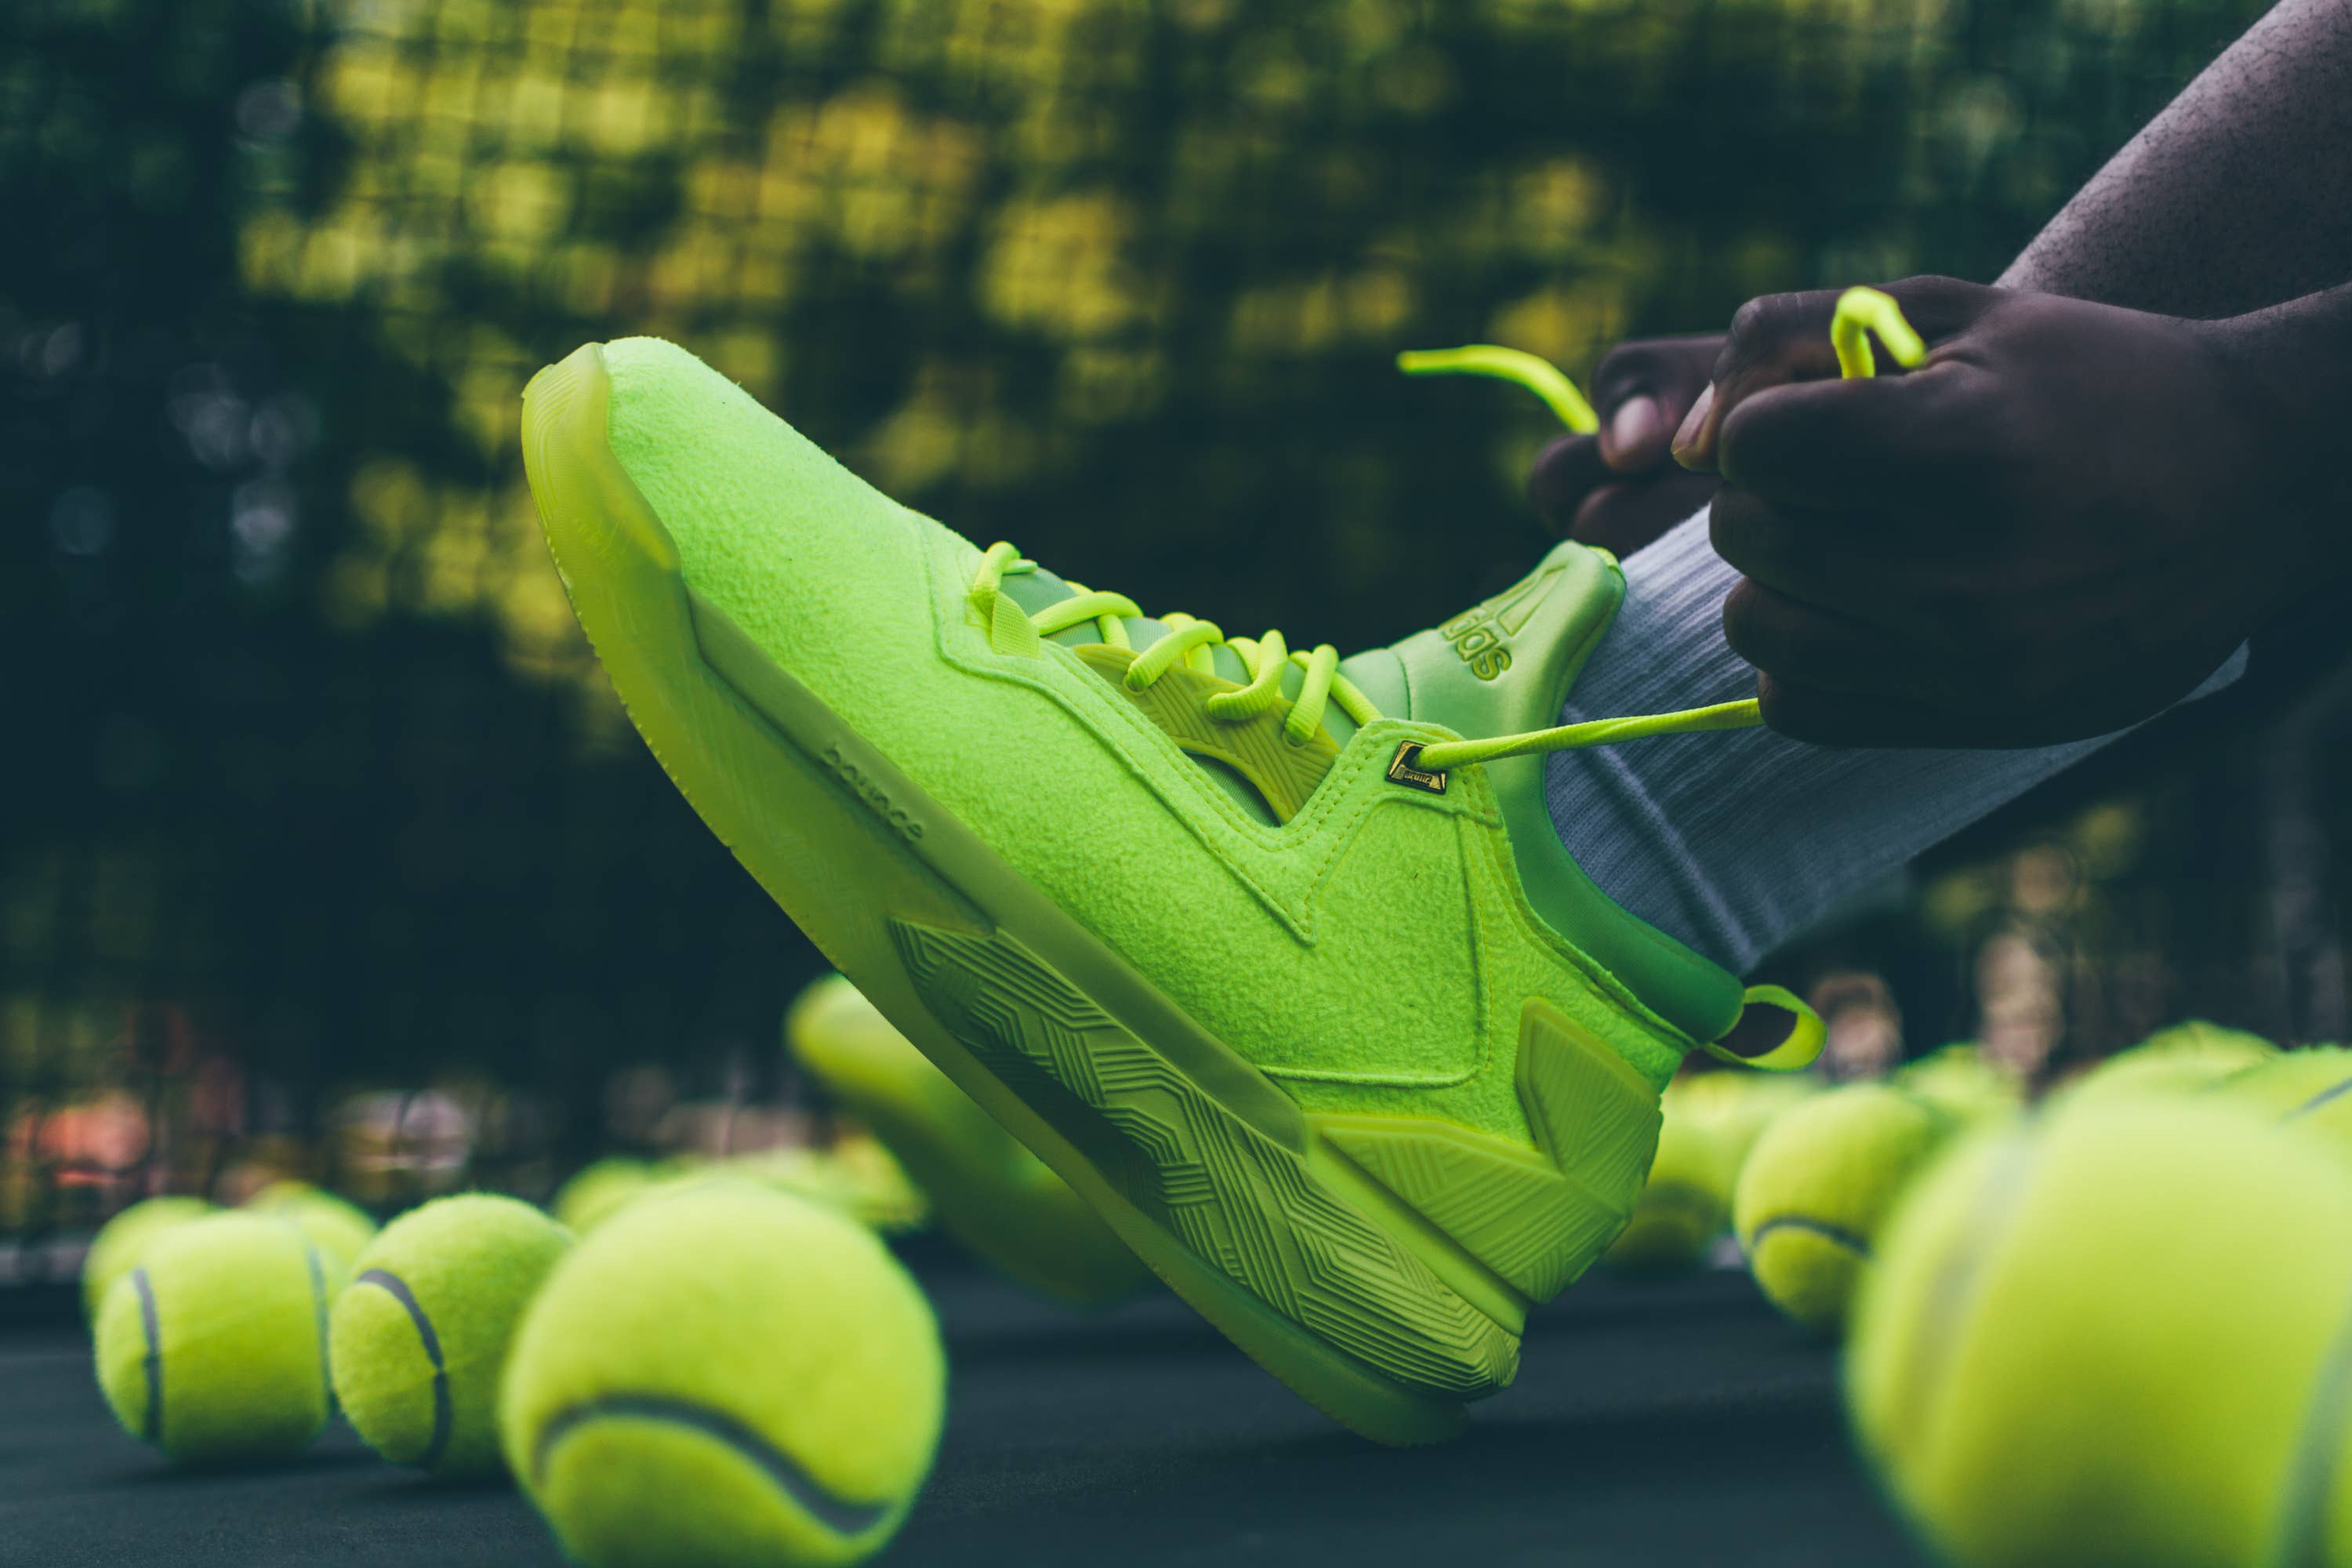 Adidas D Lillard 2 "Tennis Ball"